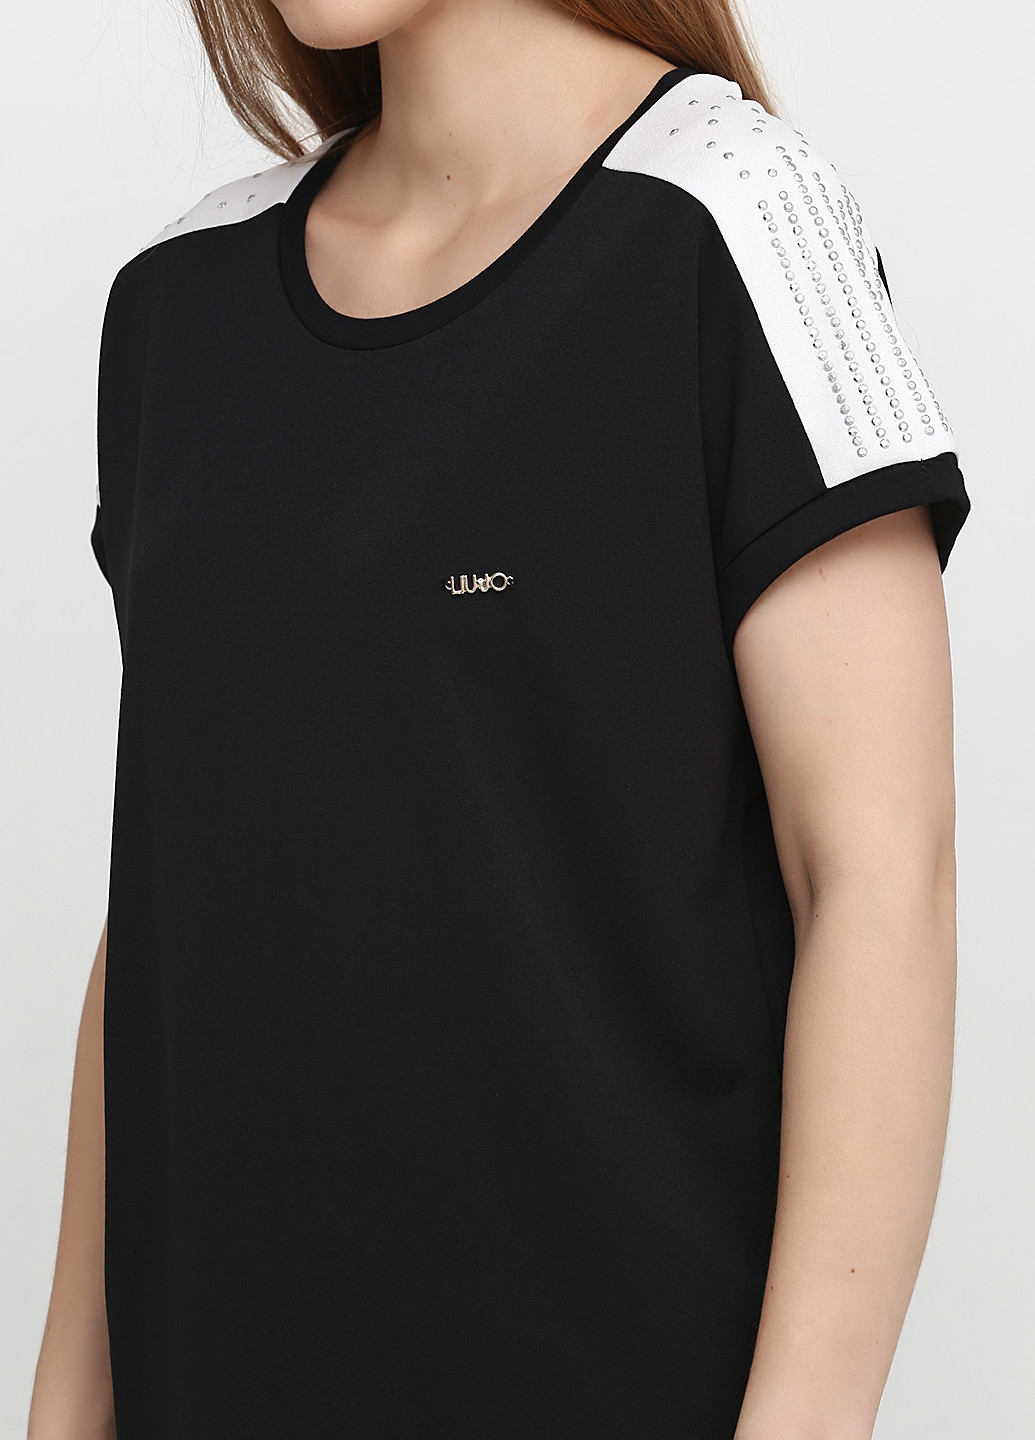 Костюм (блуза, брюки) Liu-Jo брючный полоска чёрный спортивный